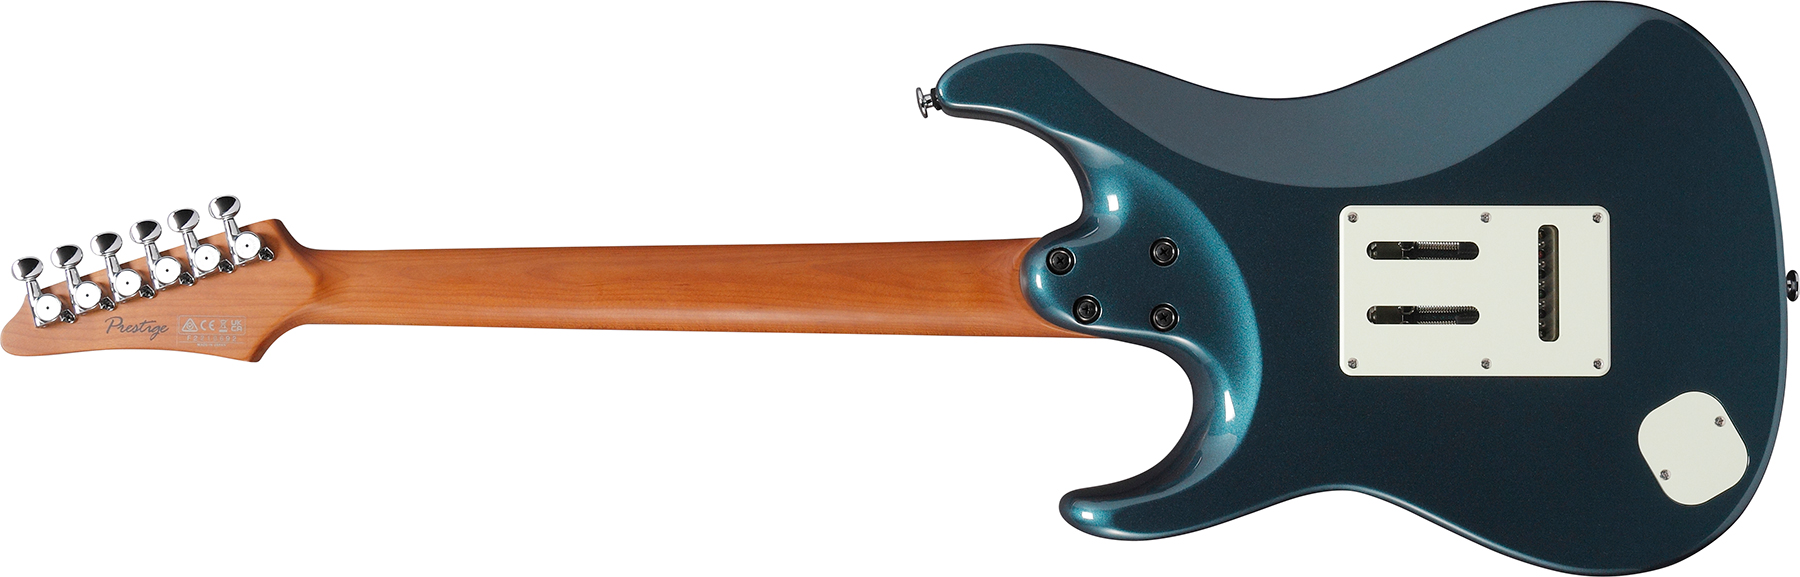 Ibanez Az2203n Atq Prestige Jap 3s Seymour Duncan Trem Rw - Antique Turquoise - Guitare Électrique Forme Str - Variation 1